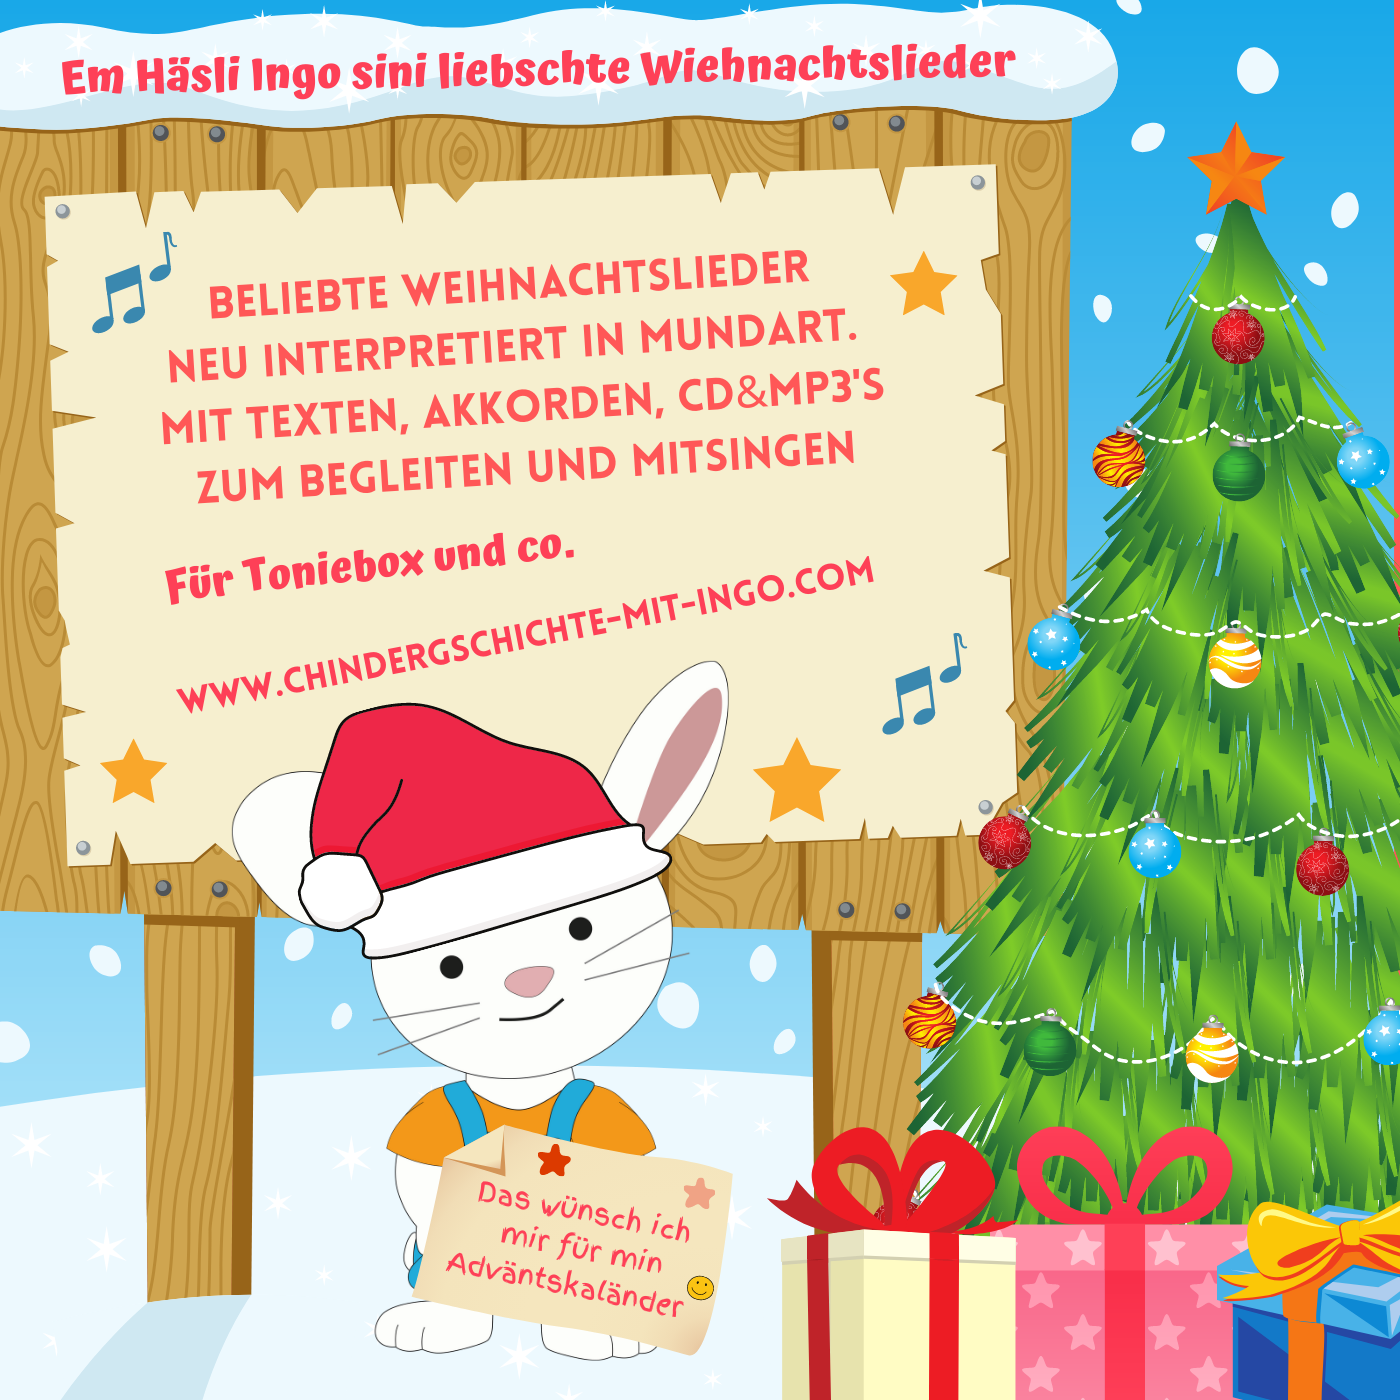 Em Häsli Ingo sini liebschte Wiehnachtslieder mit CD/MP3/Liederbuech/Videoclips